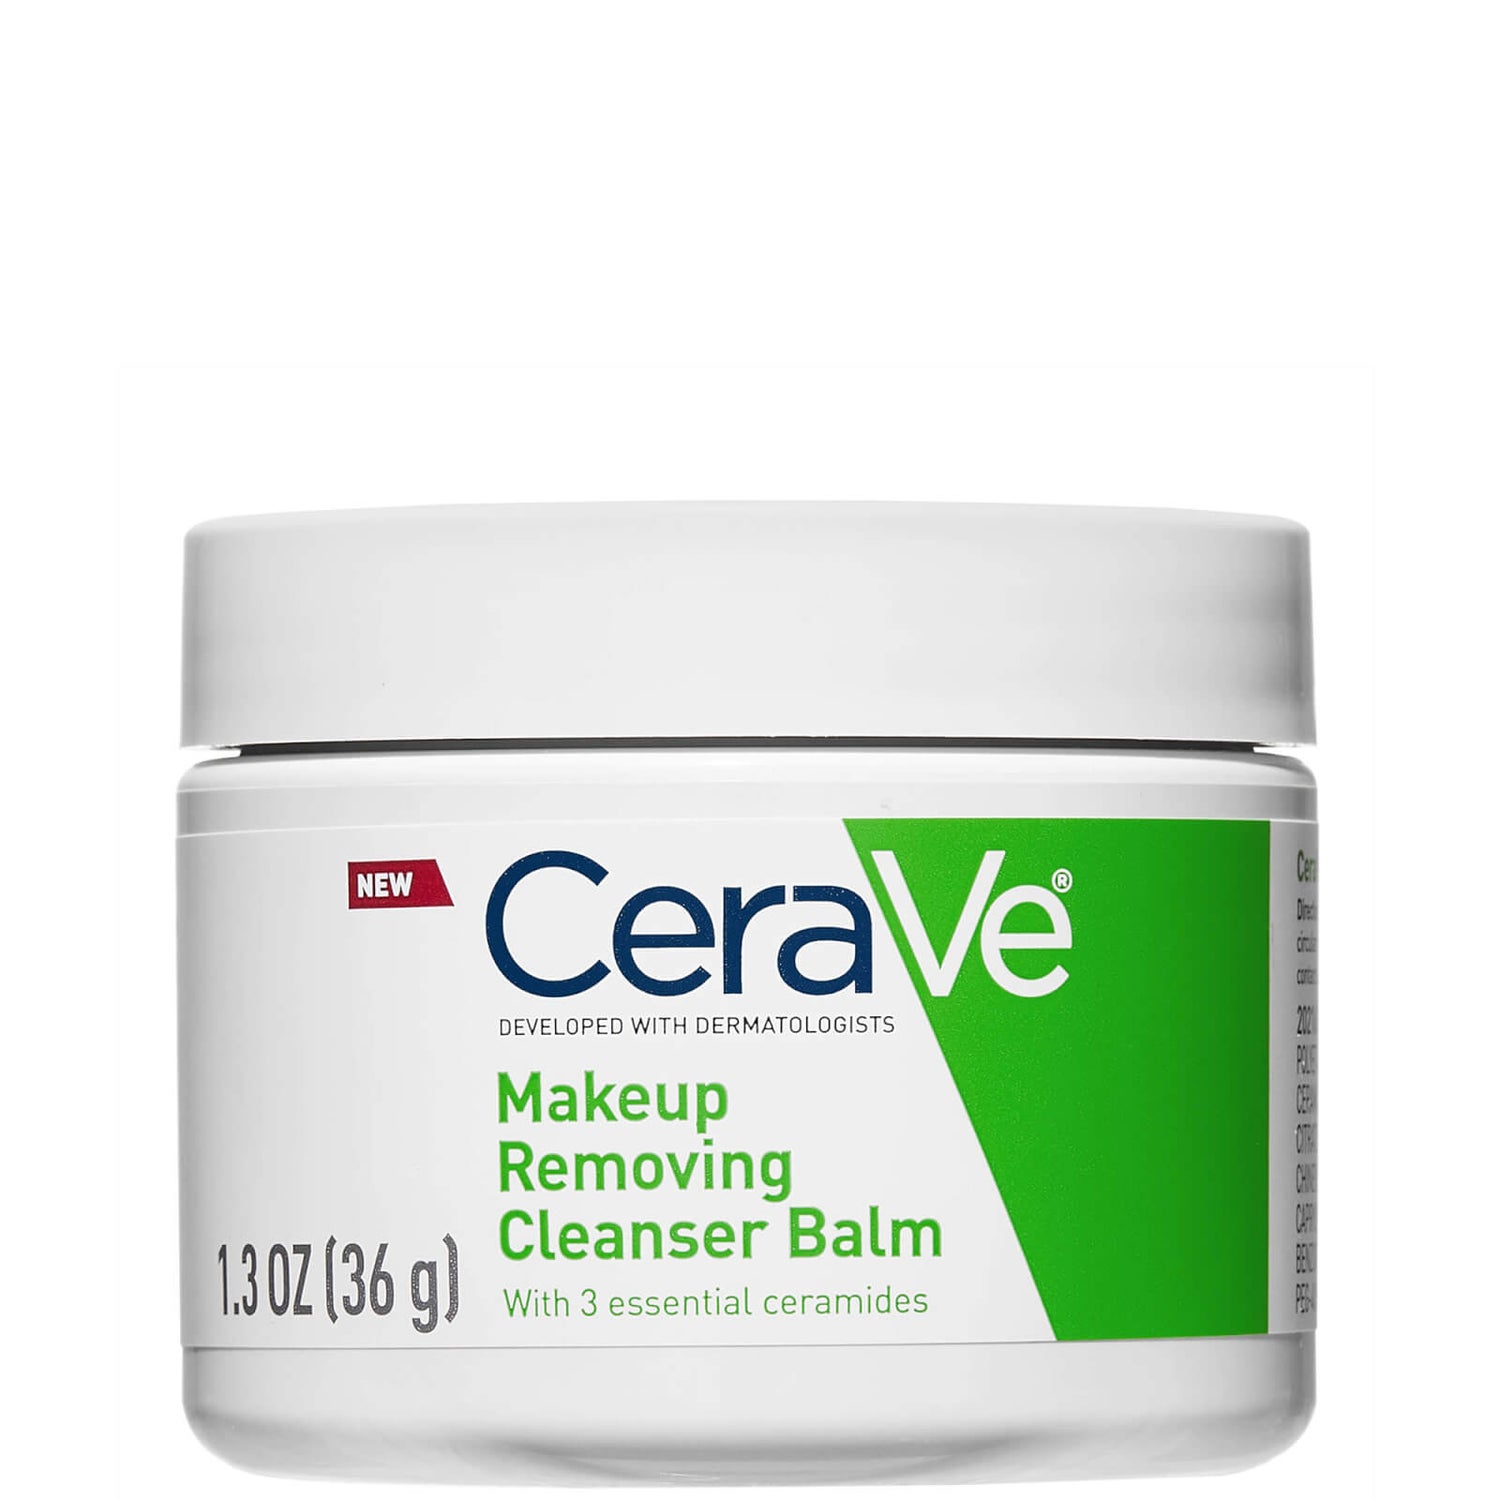 CeraVe Makeup Removing Cleanser Balm (1.3 fl. oz.)